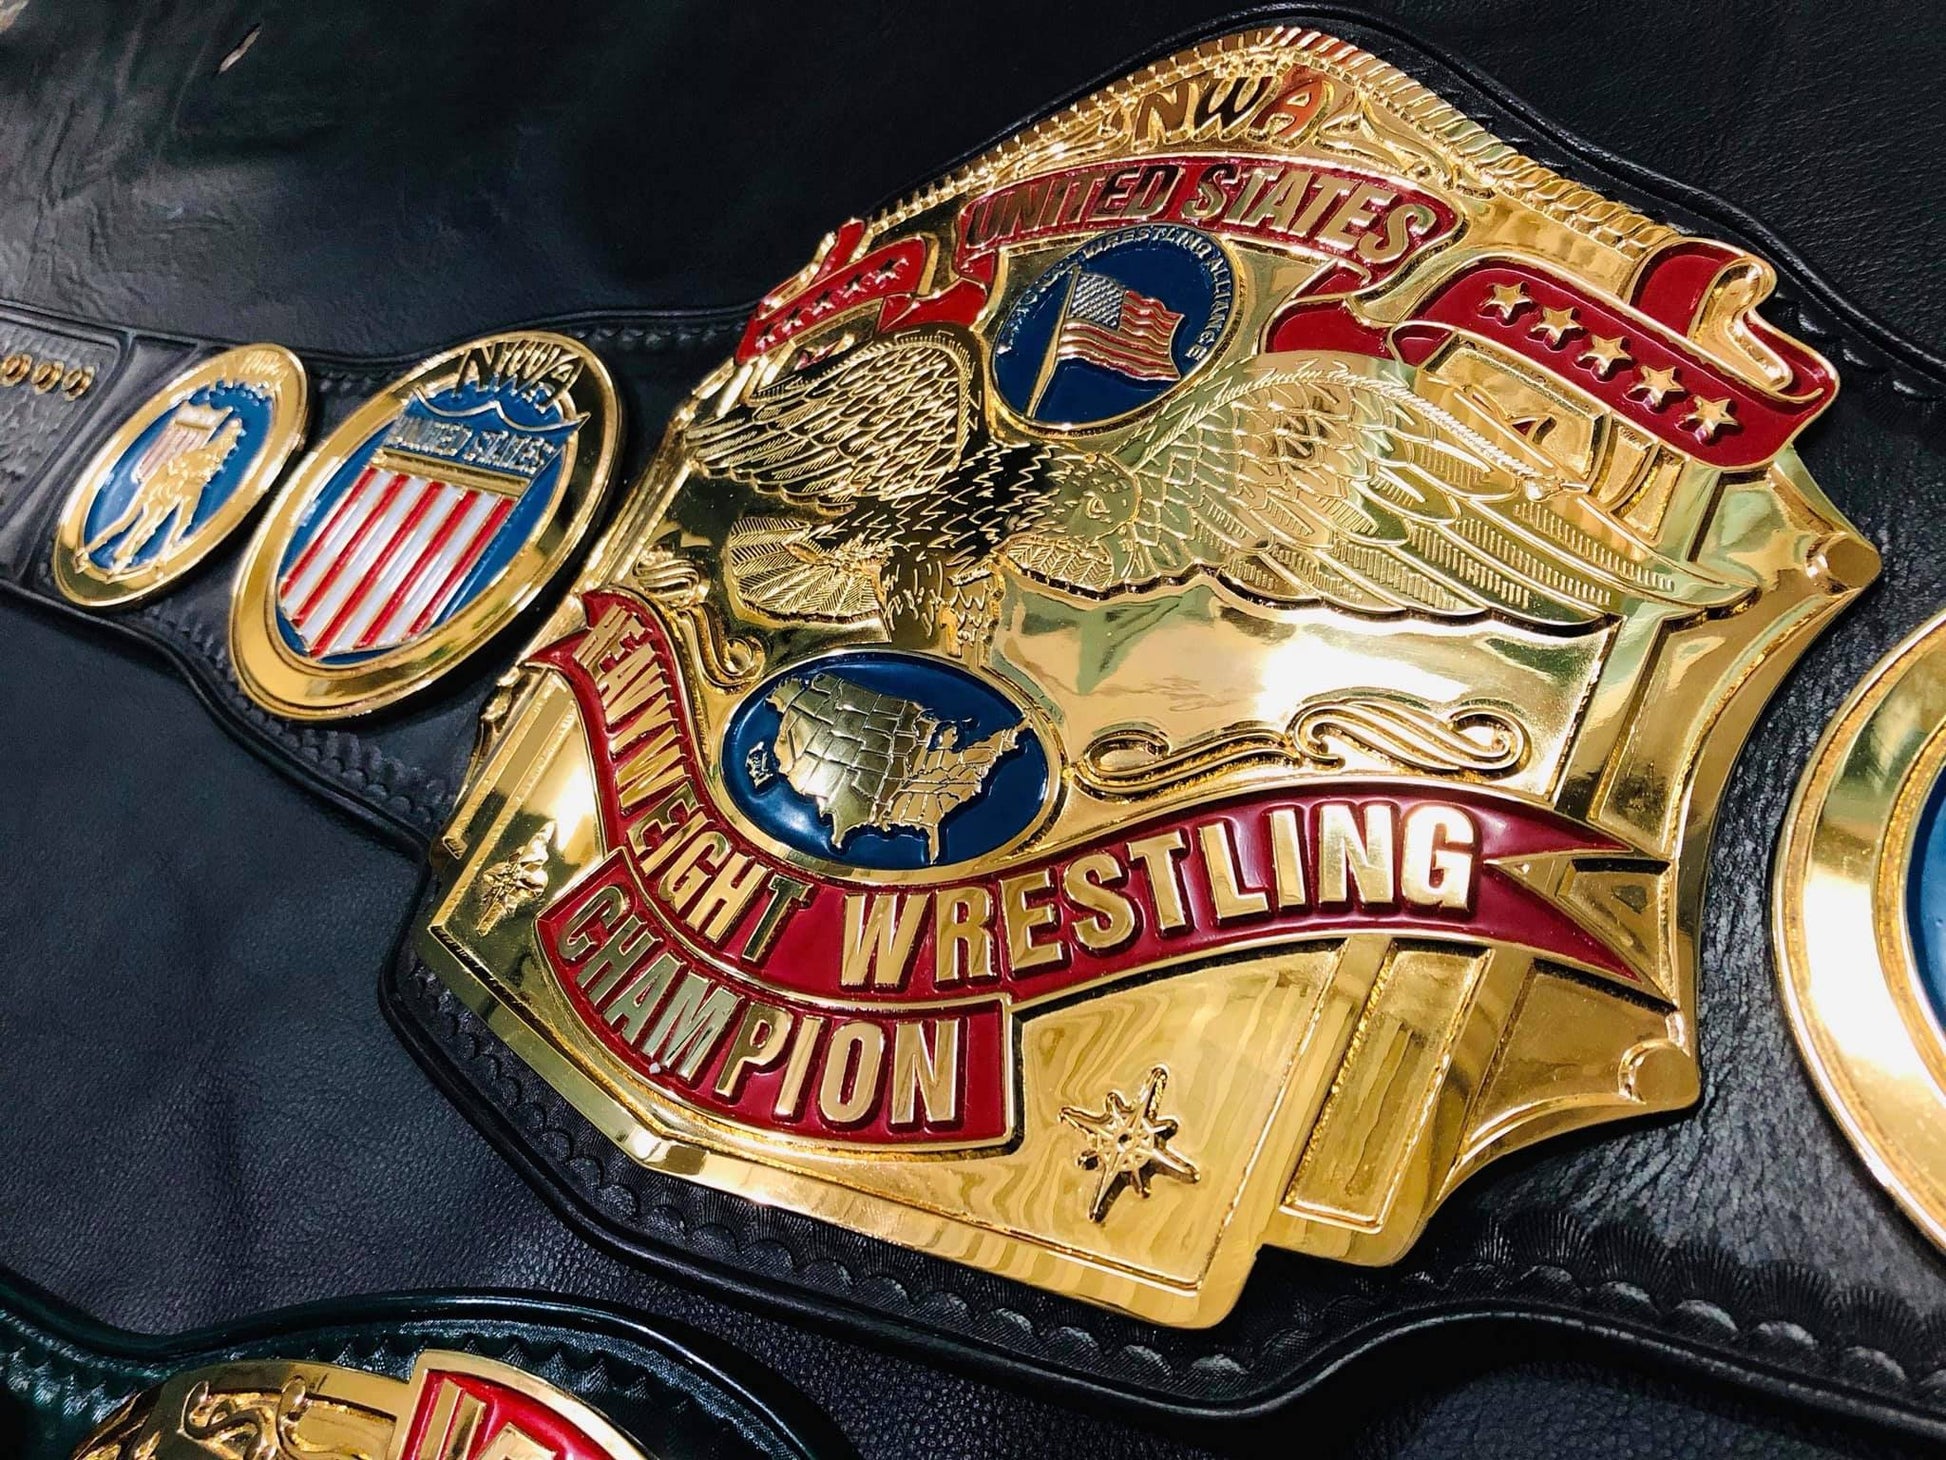 NWA us title (24k swiss gold) - Moc Belts 